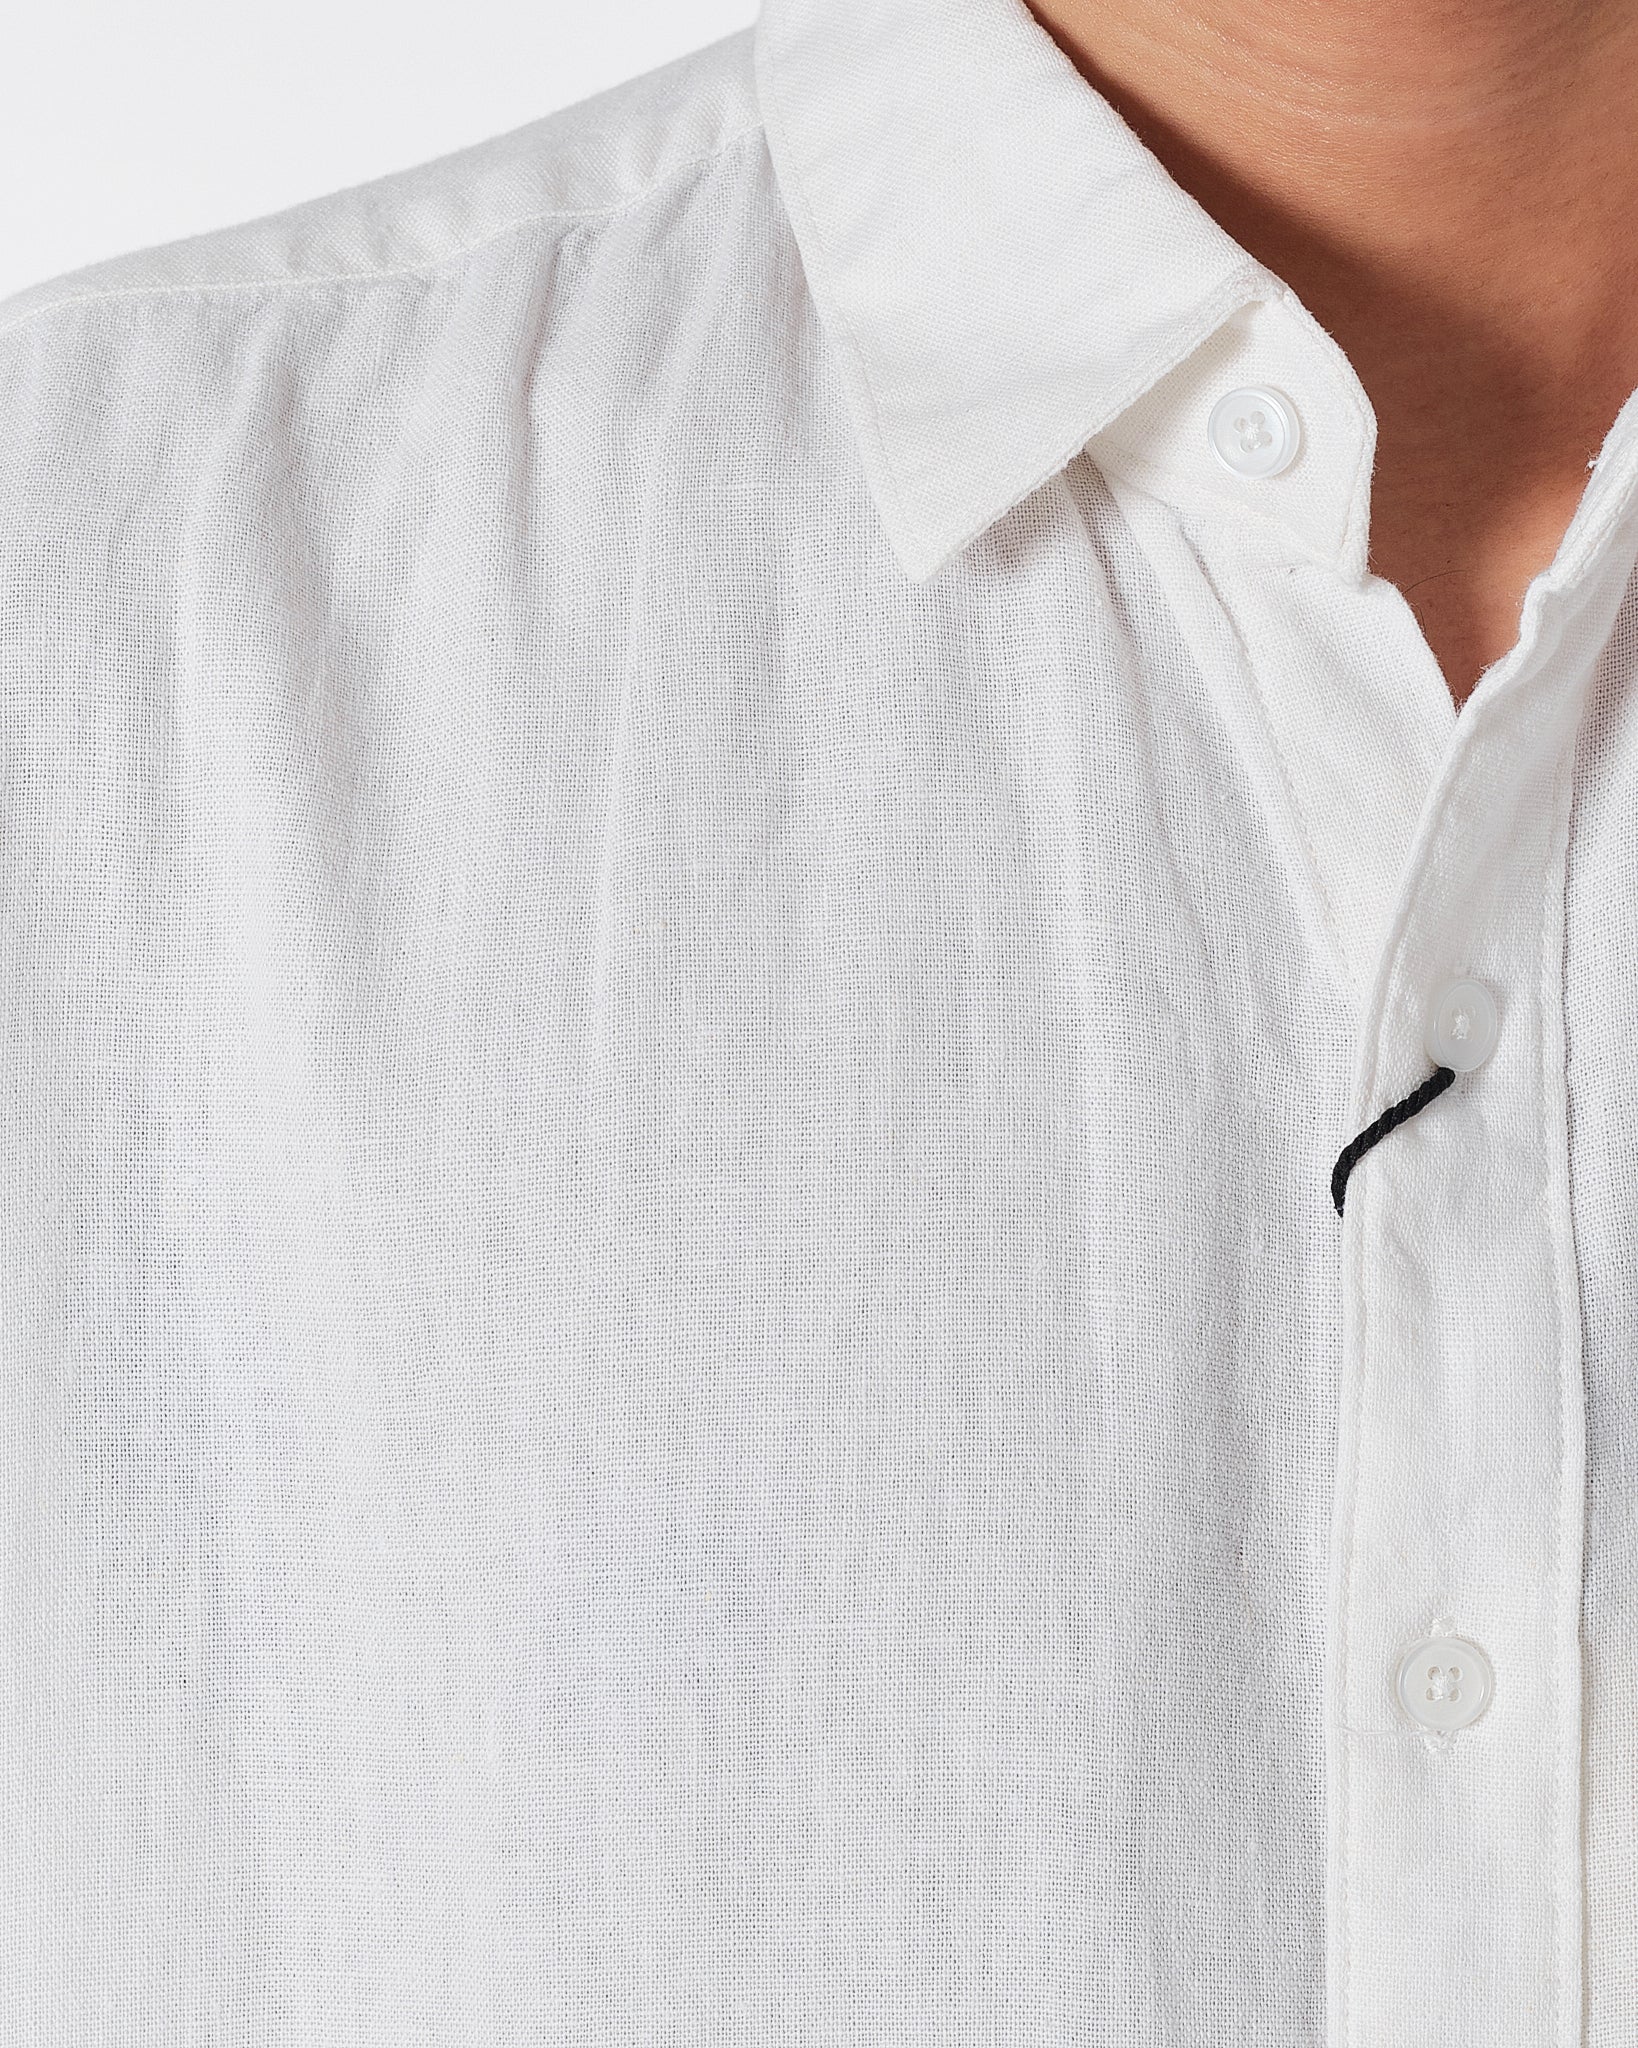 CK Linen Men White Shirts Short Sleeve 20.90